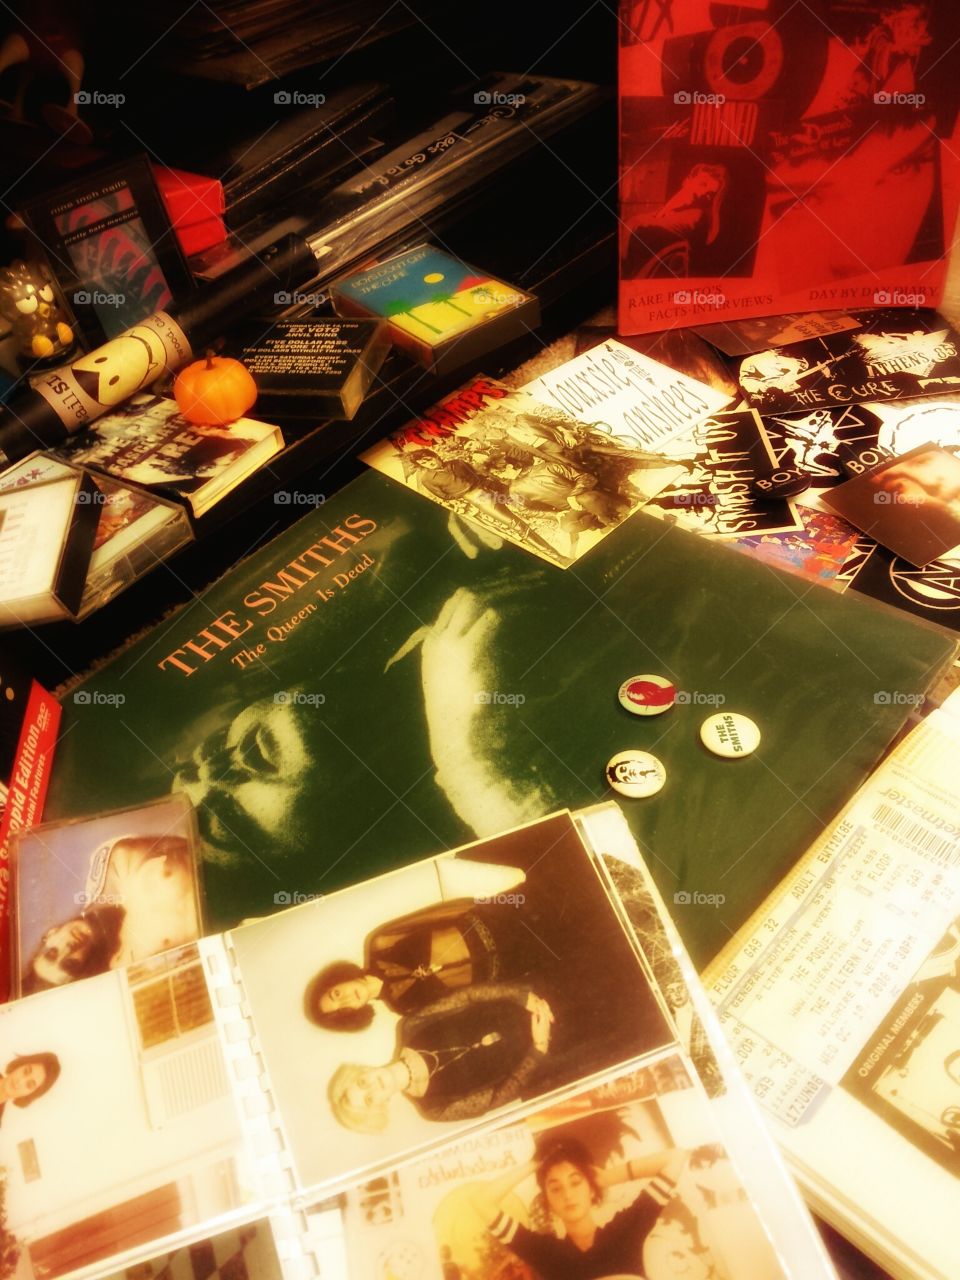 1980s 1990s Punk, Gothic, alternative memorabilia, stickers, LPs, tapes.